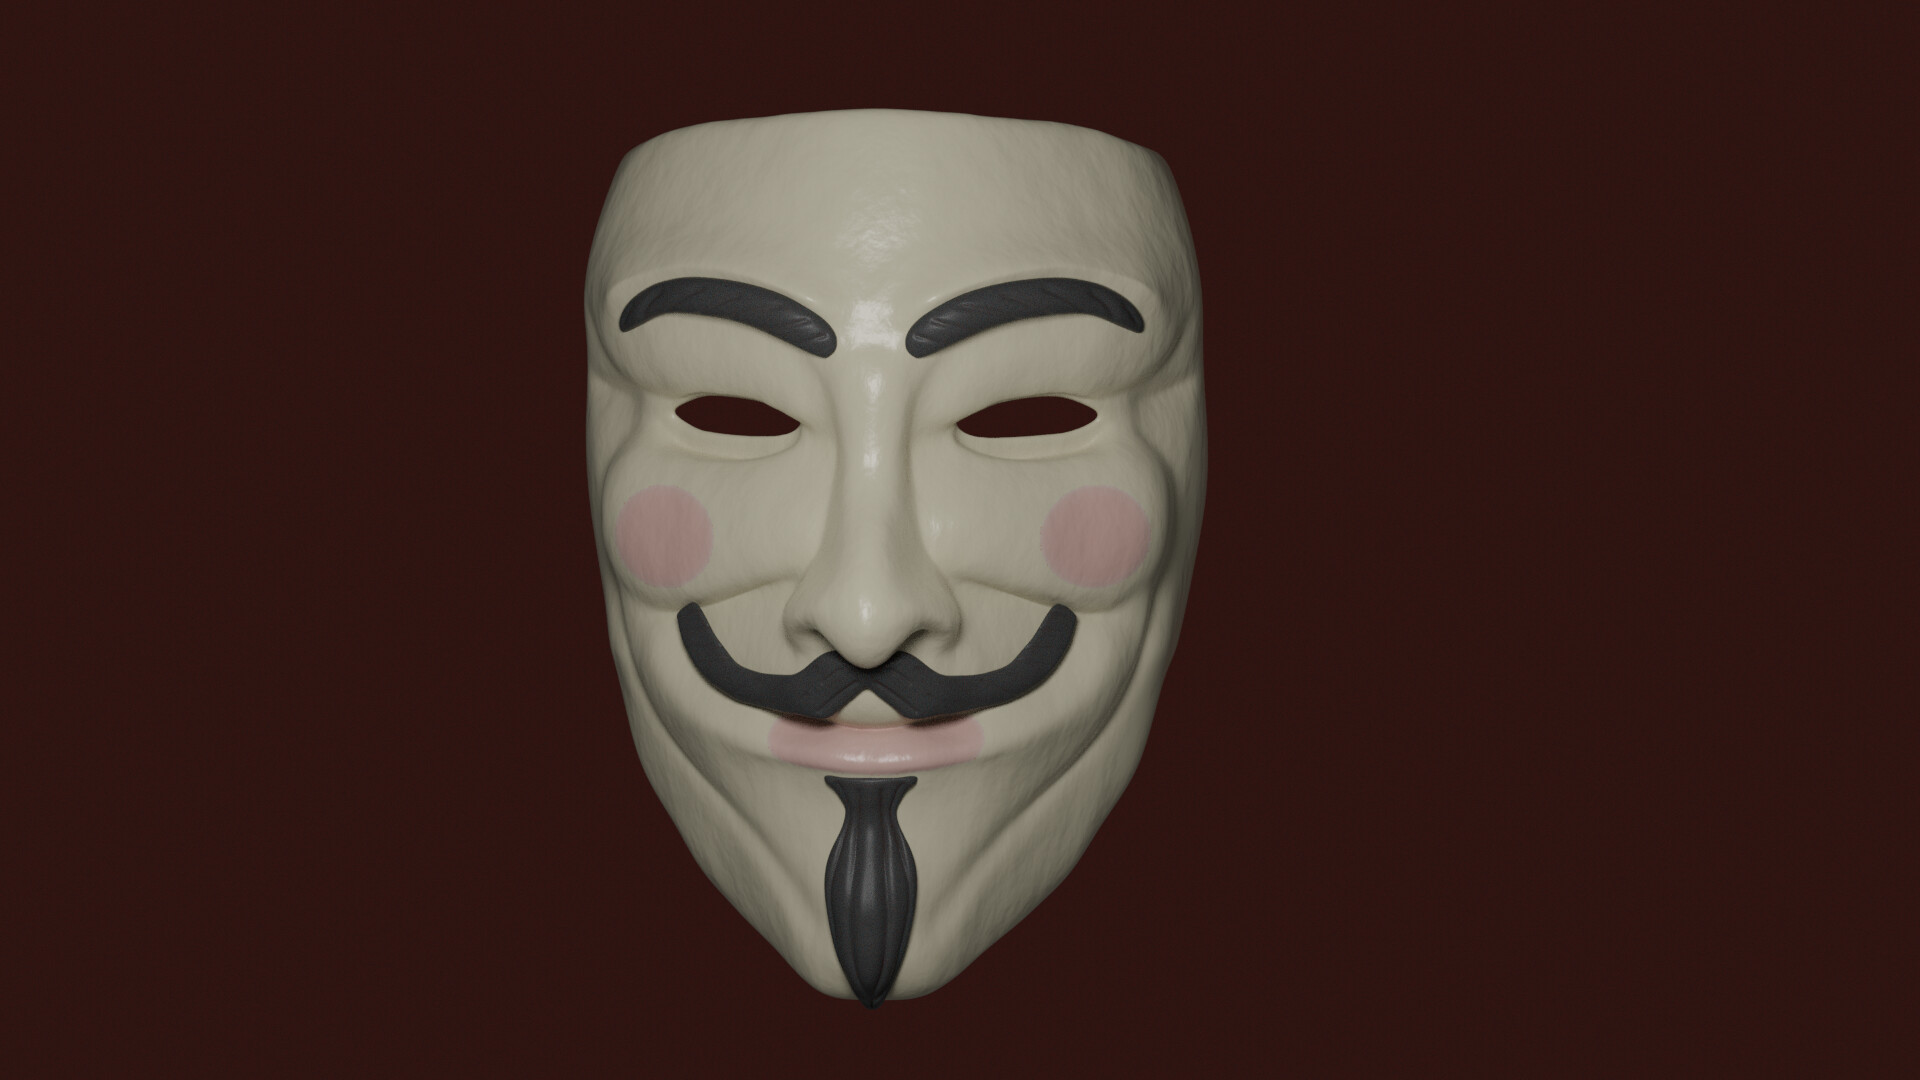 ArtStation - Guy Fawkes Mask